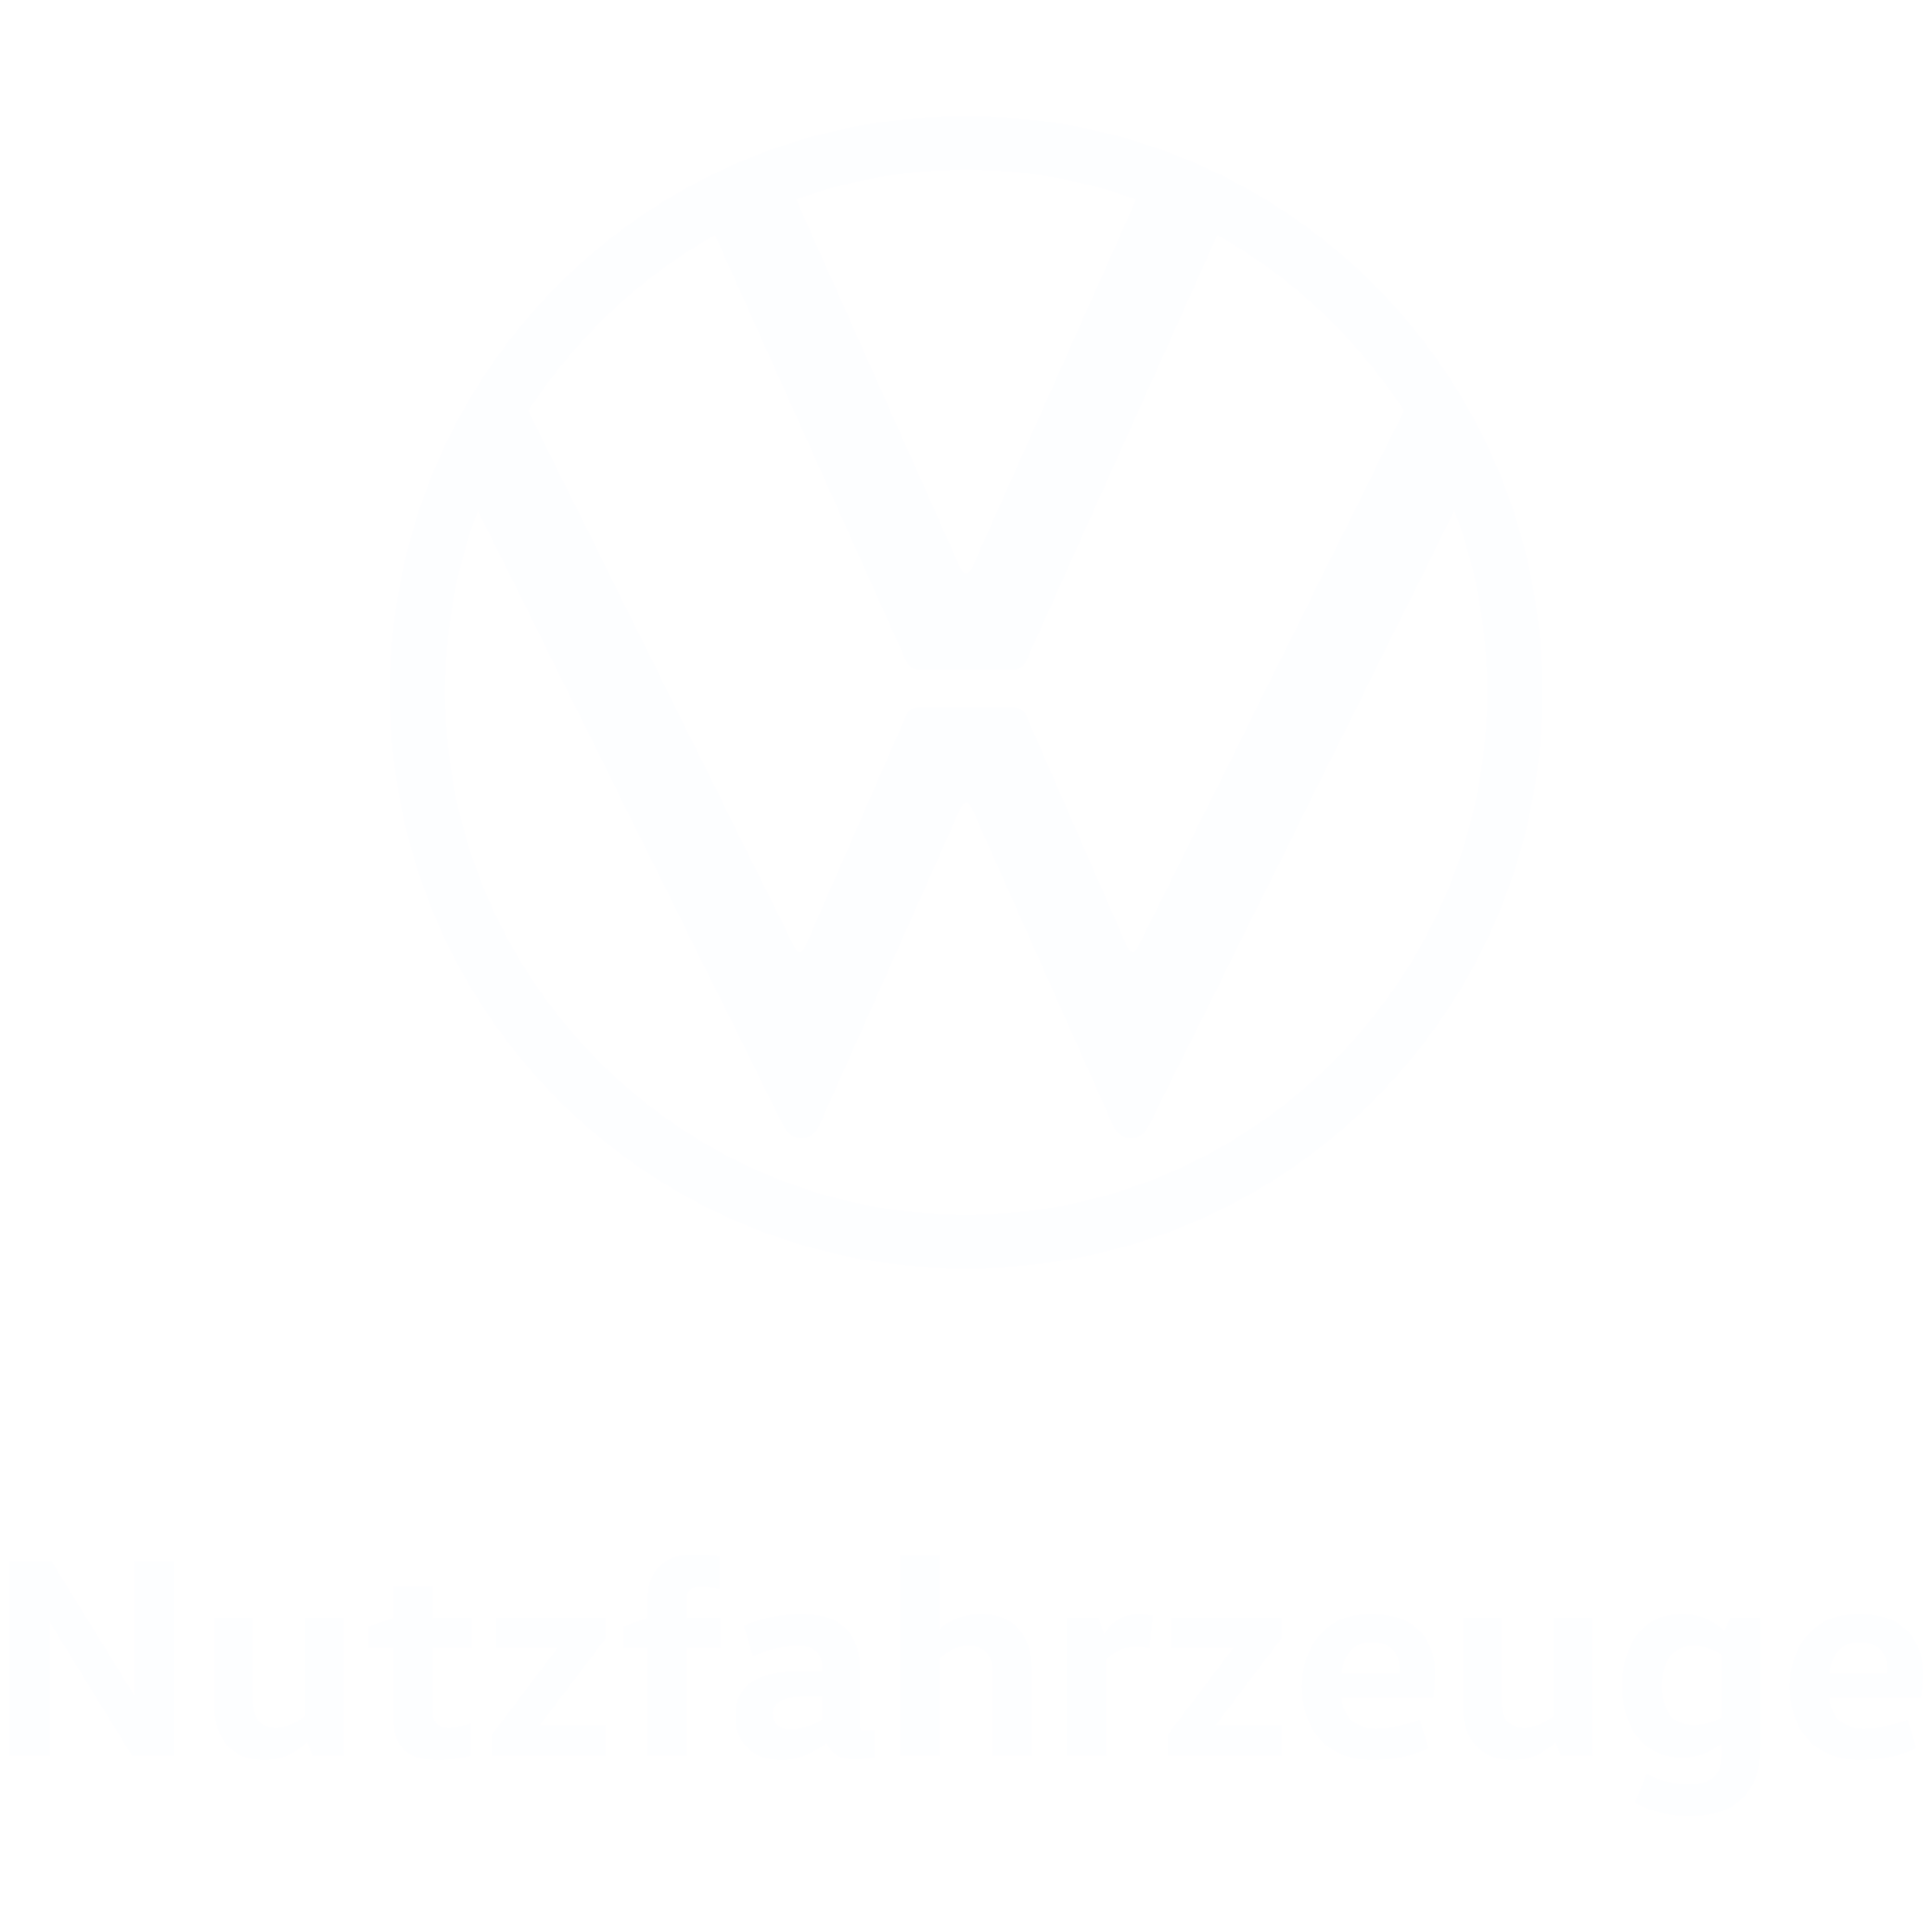 VW Nutzfahrzeuge